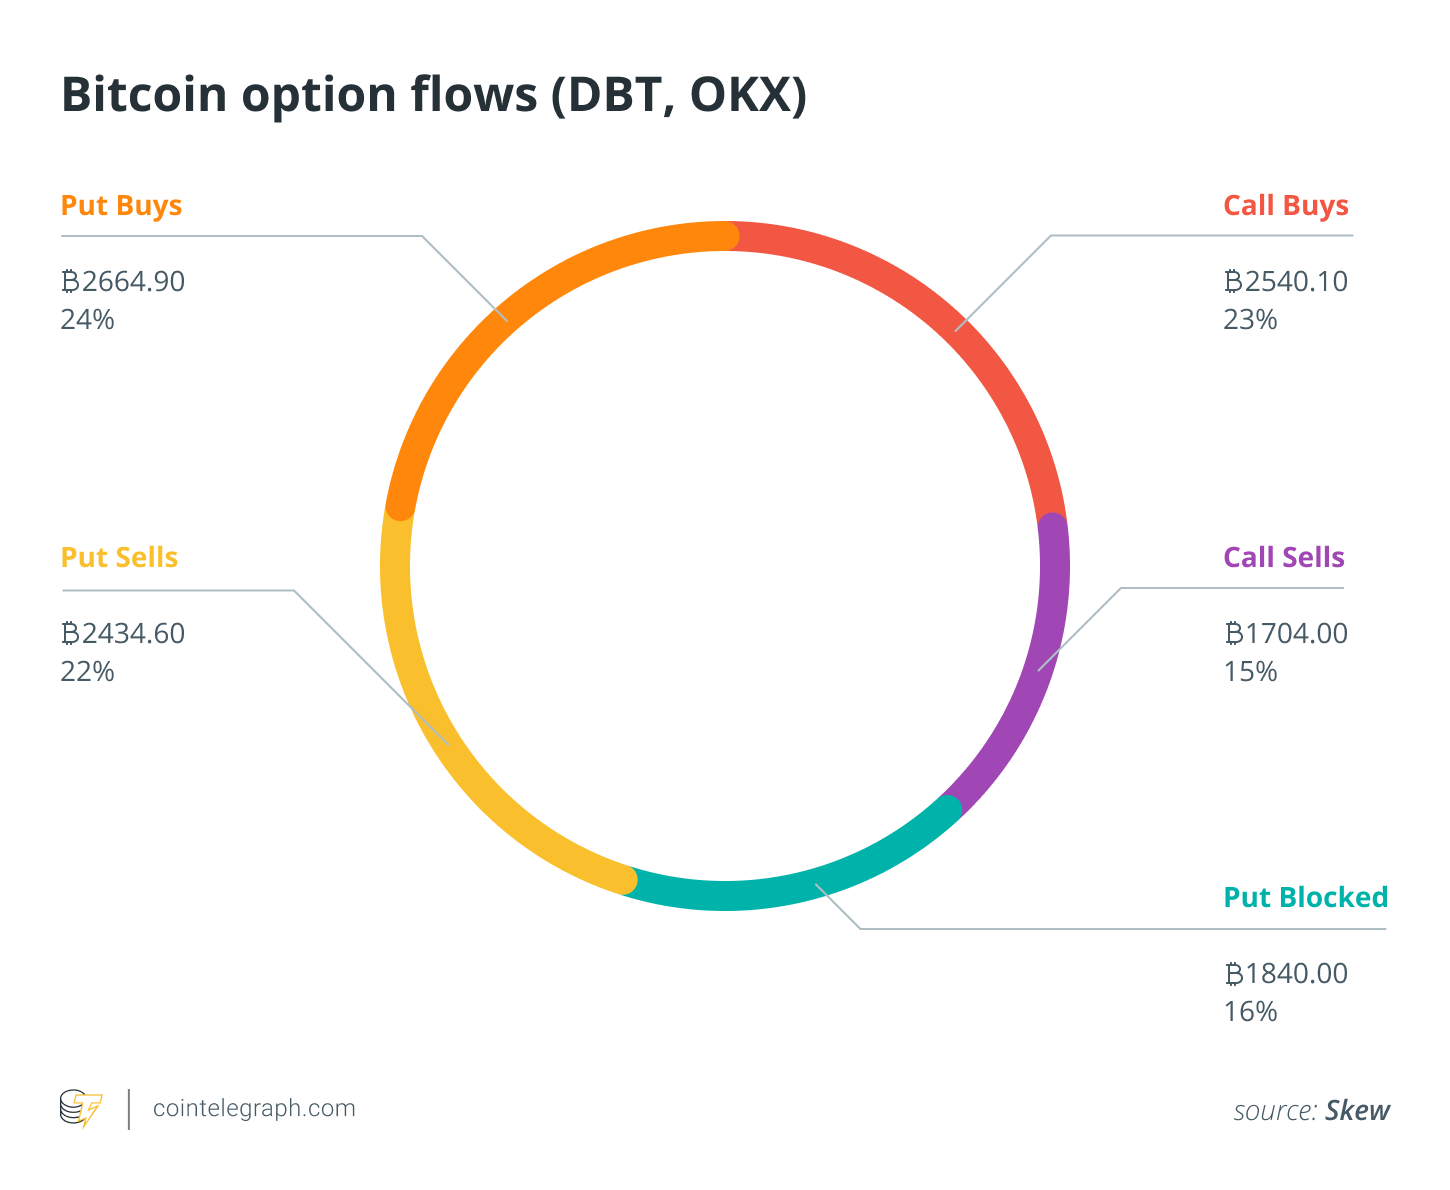 Bitcoin option flows (DBT, OKX)